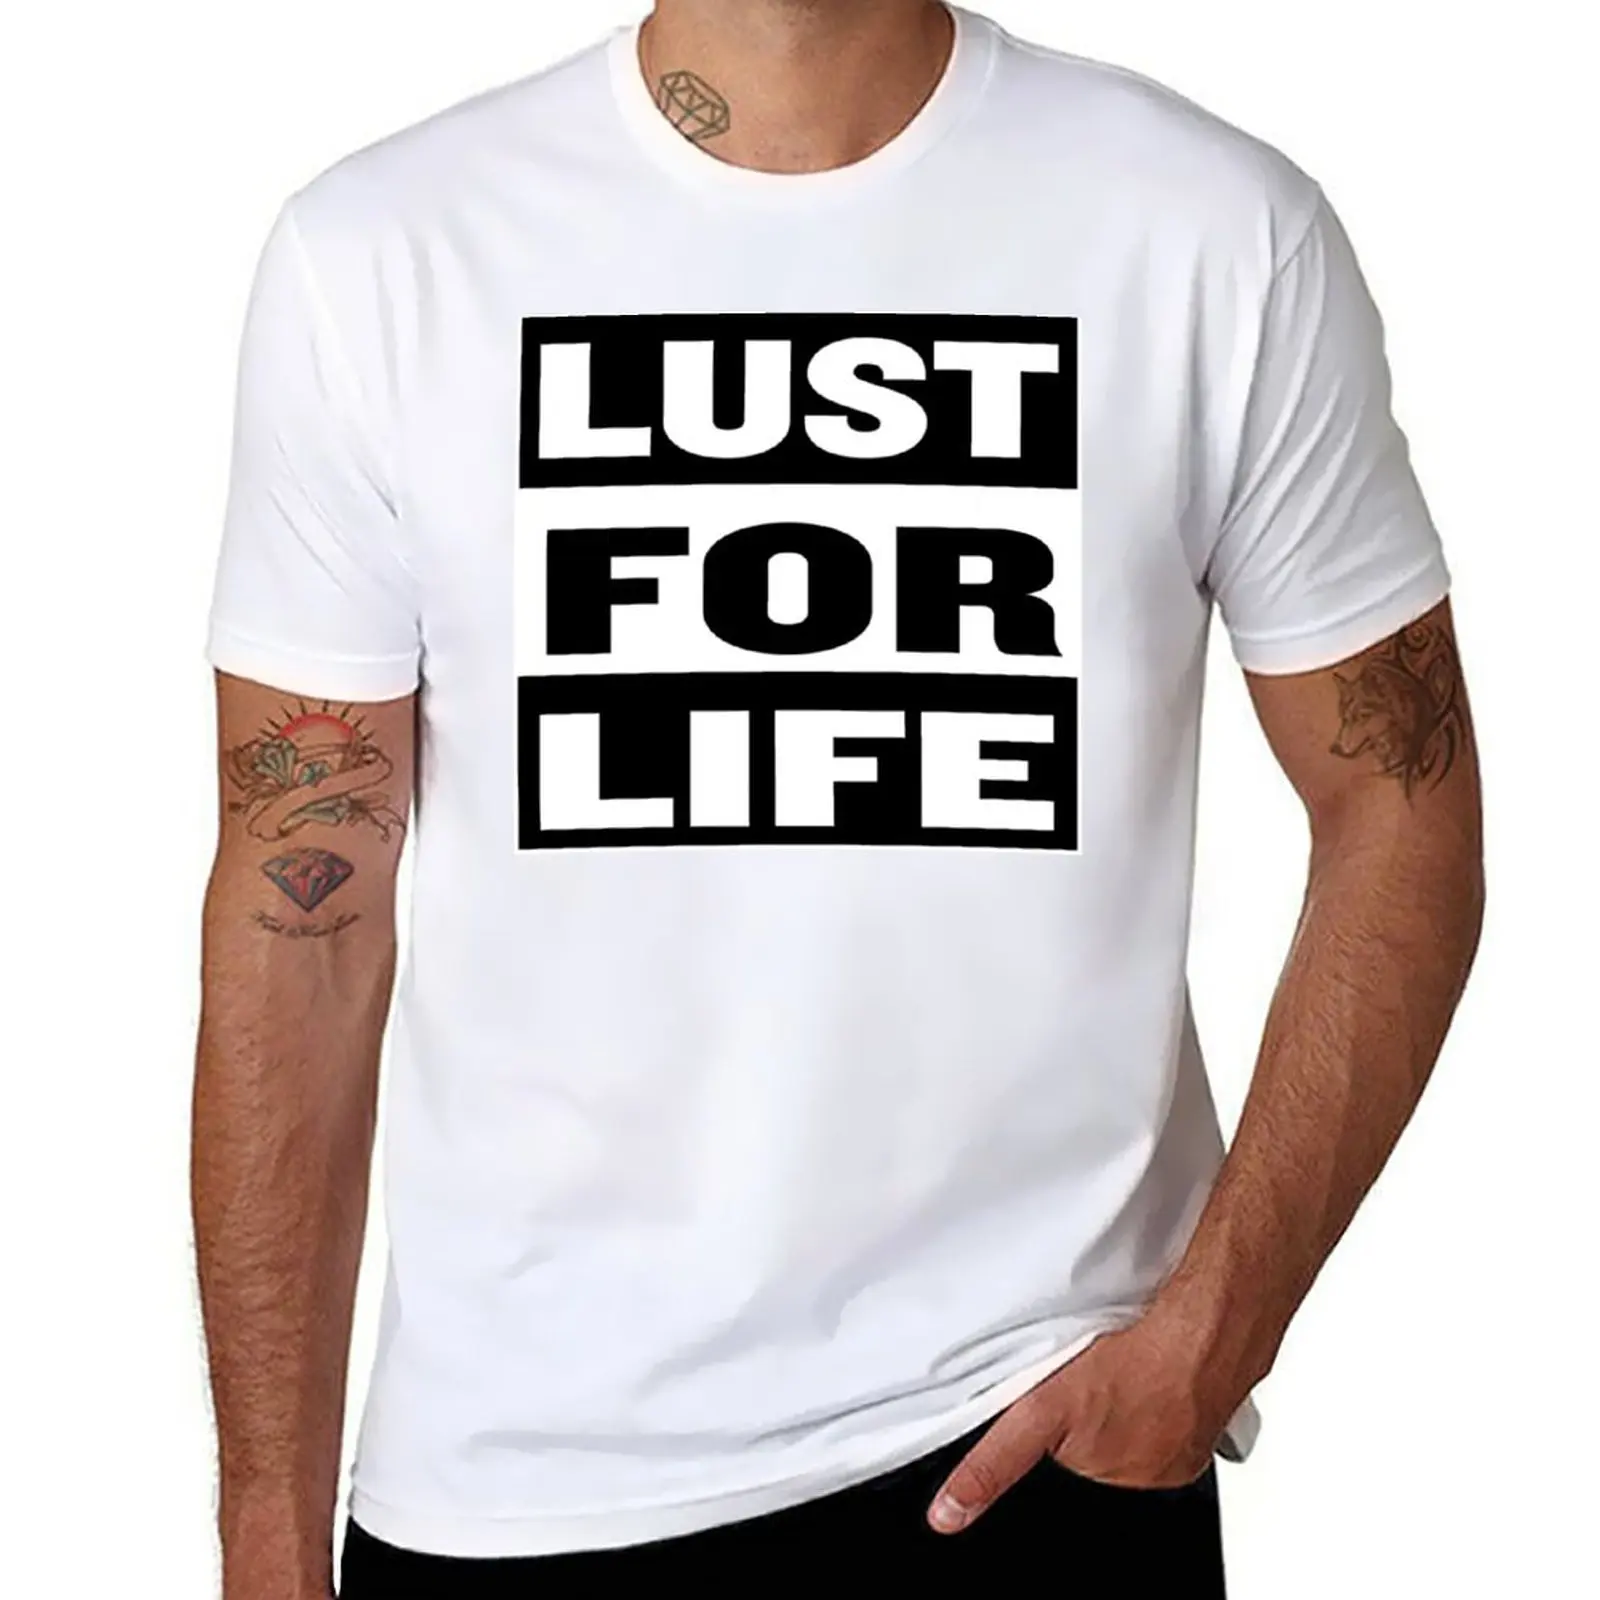 Новая футболка Lust for life, однотонная футболка, винтажная футболка, изготовленная на заказ, забавная футболка, тяжелые футболки для мужчин